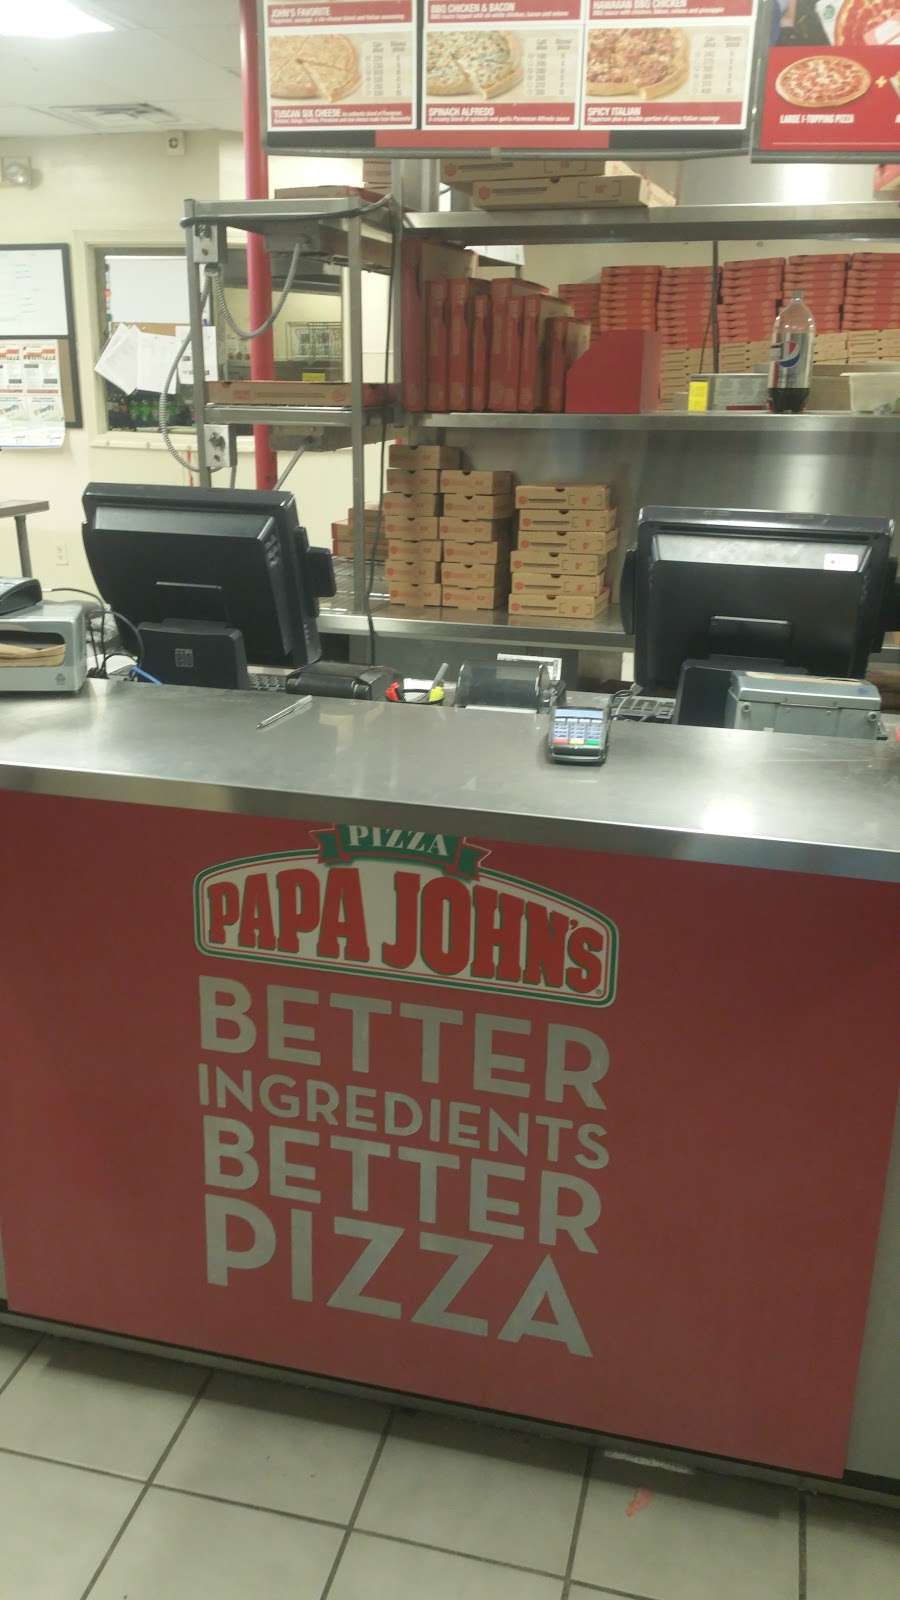 Papa Johns Pizza | 7361 State Ave, Kansas City, KS 66112 | Phone: (913) 299-1000